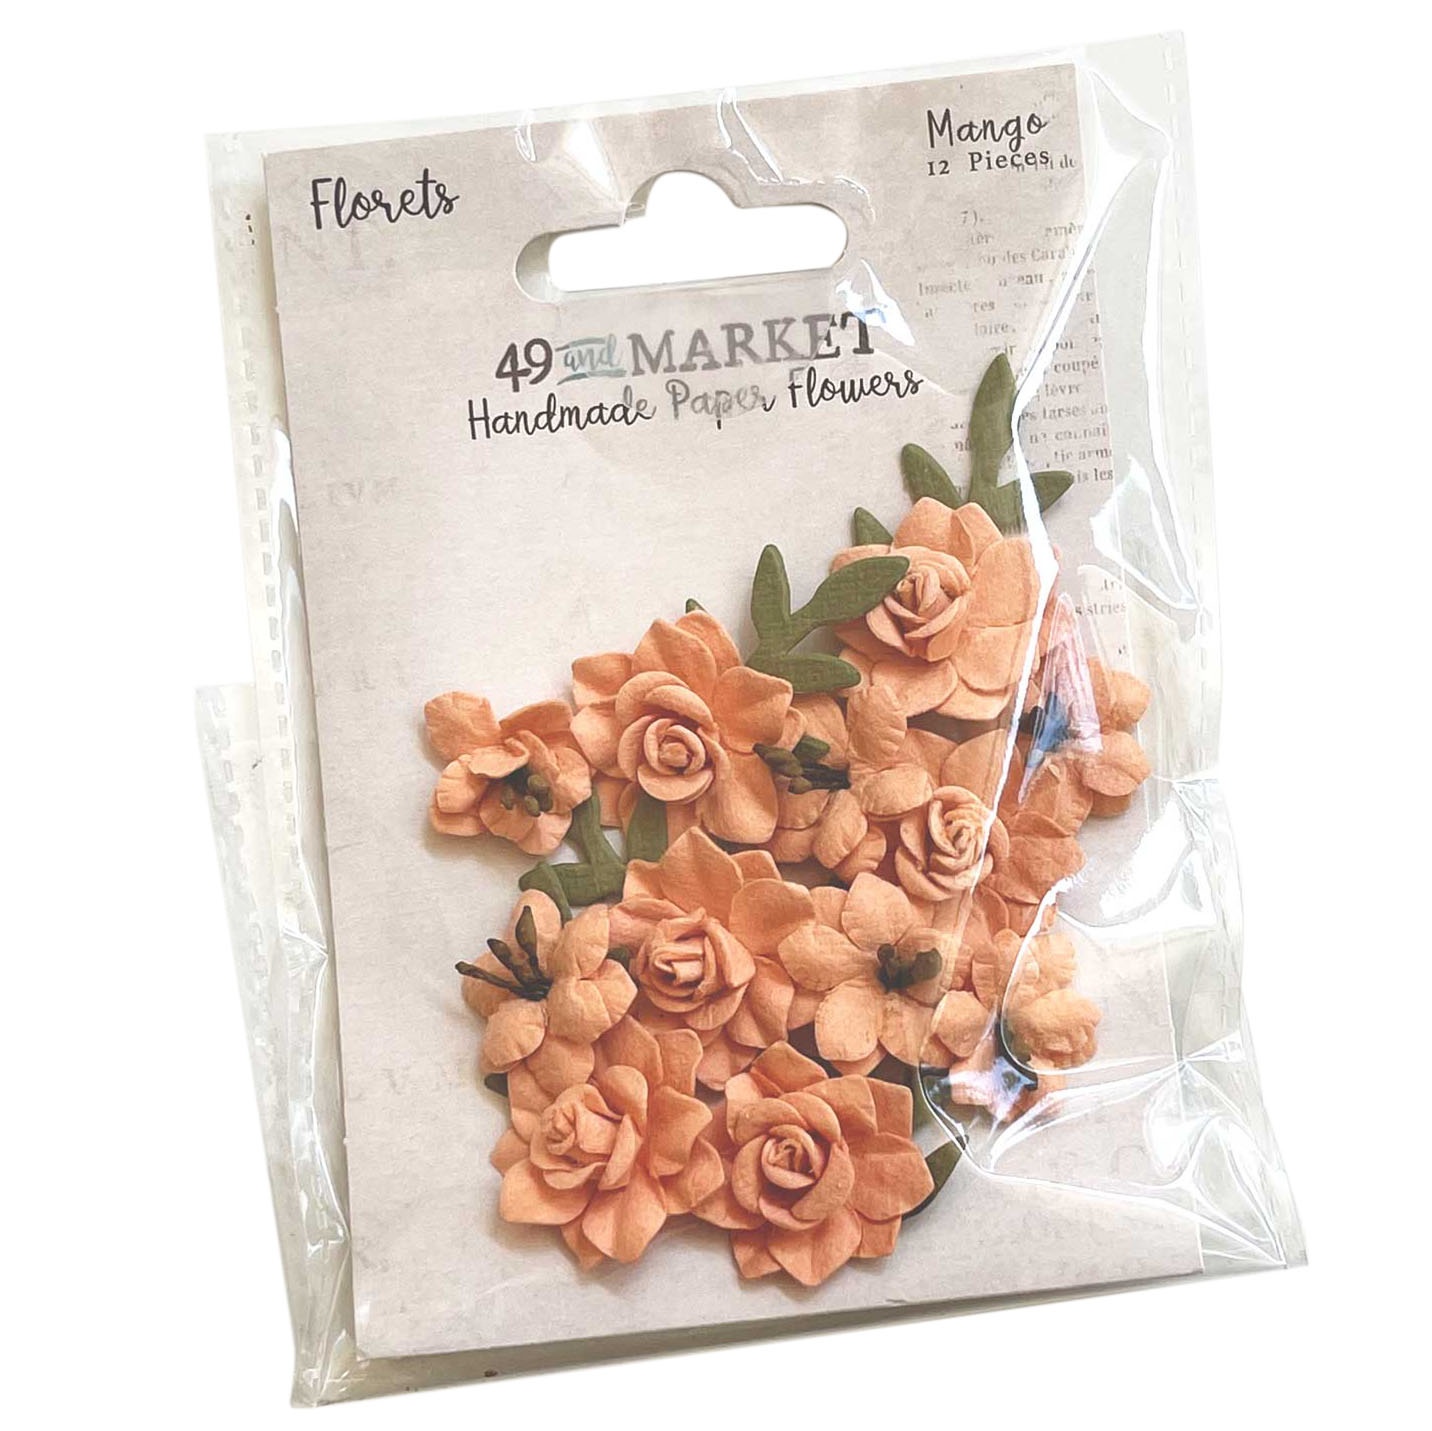 Bild von 49 And Market Florets Paper Flowers-Mango